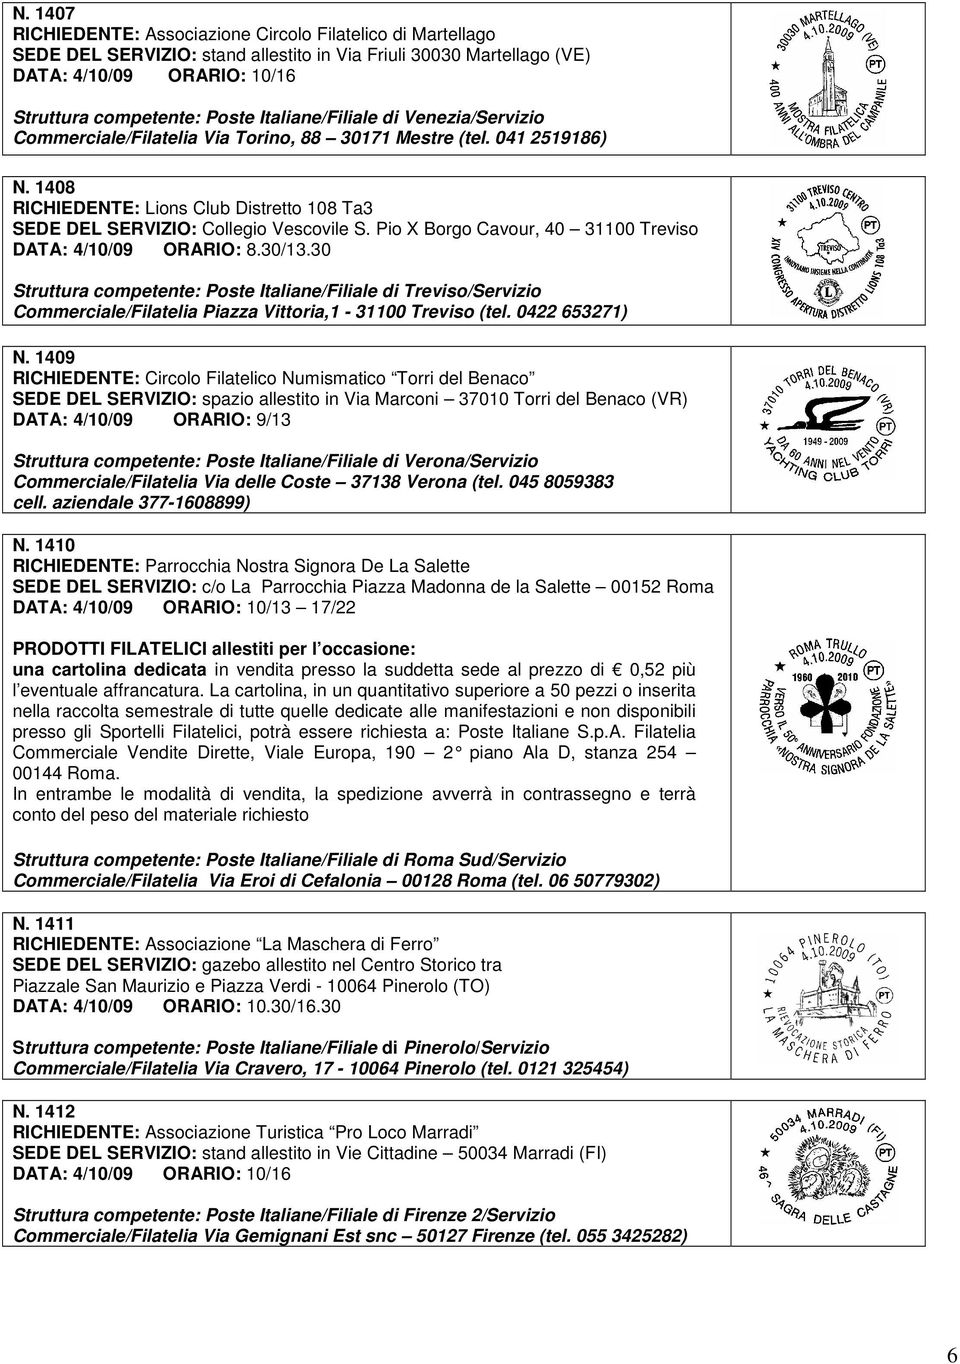 Pio X Borgo Cavour, 40 31100 Treviso DATA: 4/10/09 ORARIO: 8.30/13.30 Struttura competente: Poste Italiane/Filiale di Treviso/Servizio Commerciale/Filatelia Piazza Vittoria,1-31100 Treviso (tel.